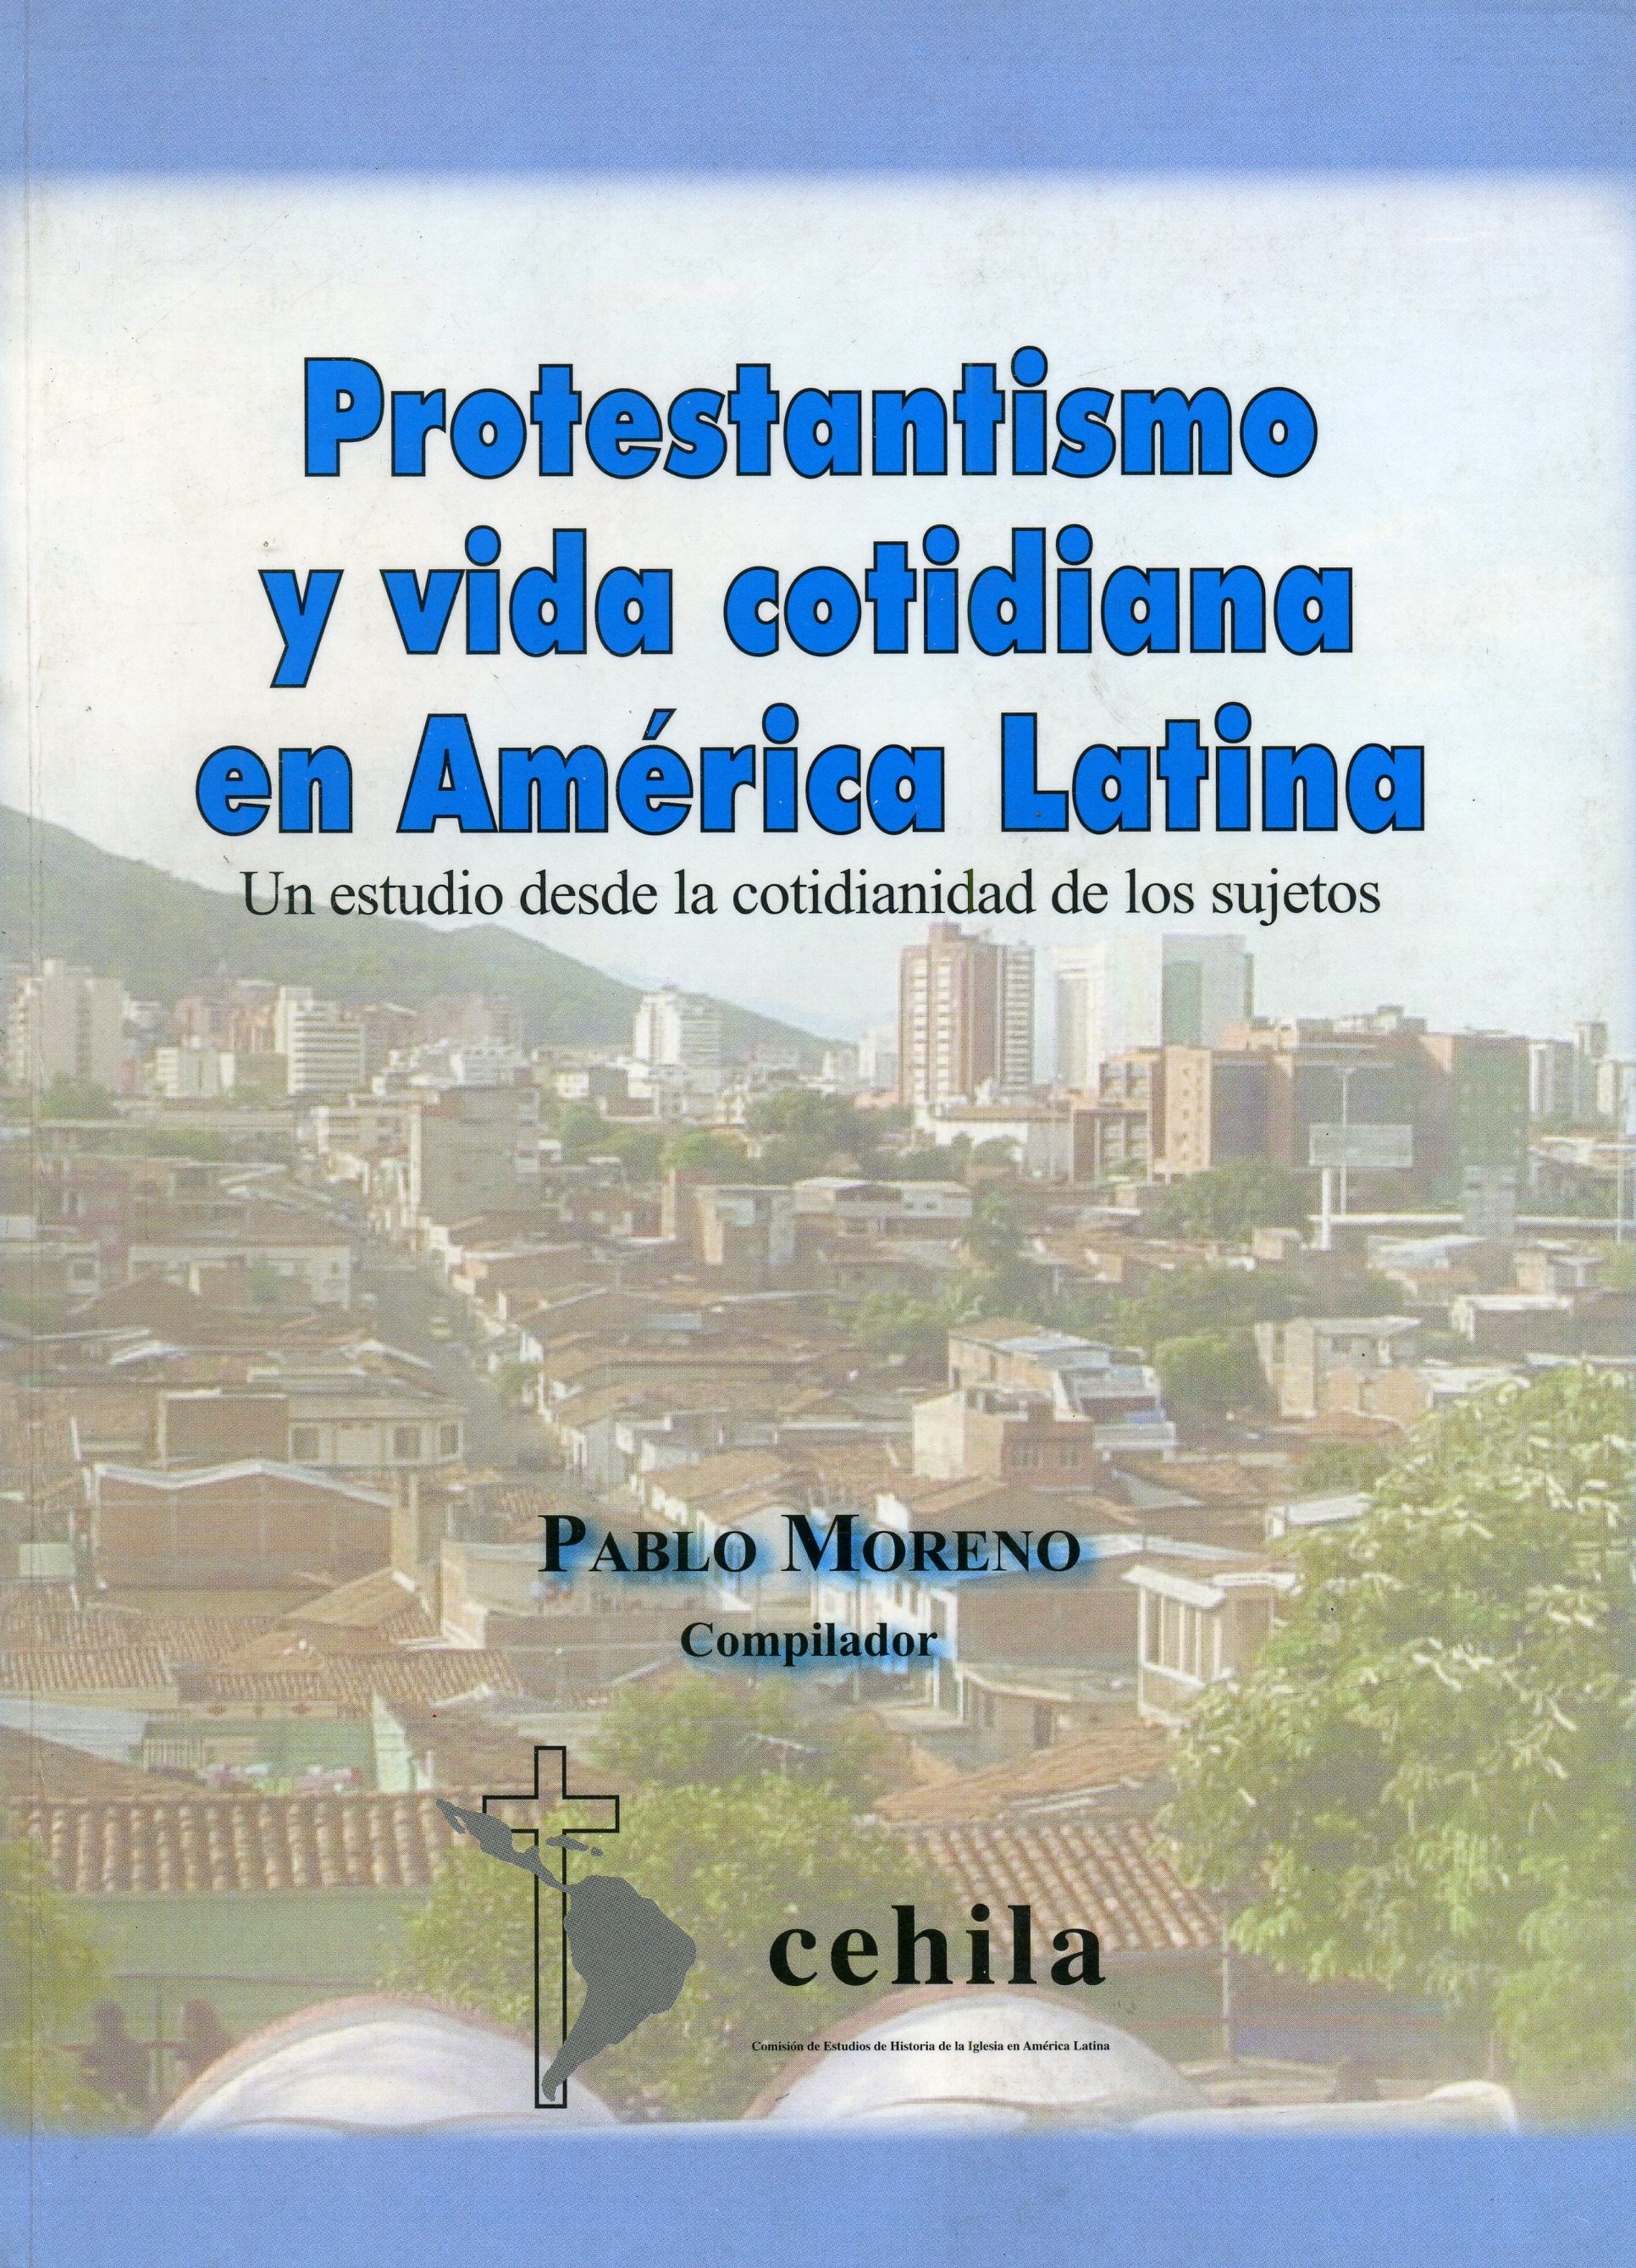 Protestantismo y vida cotidiana en Ámerica Latina